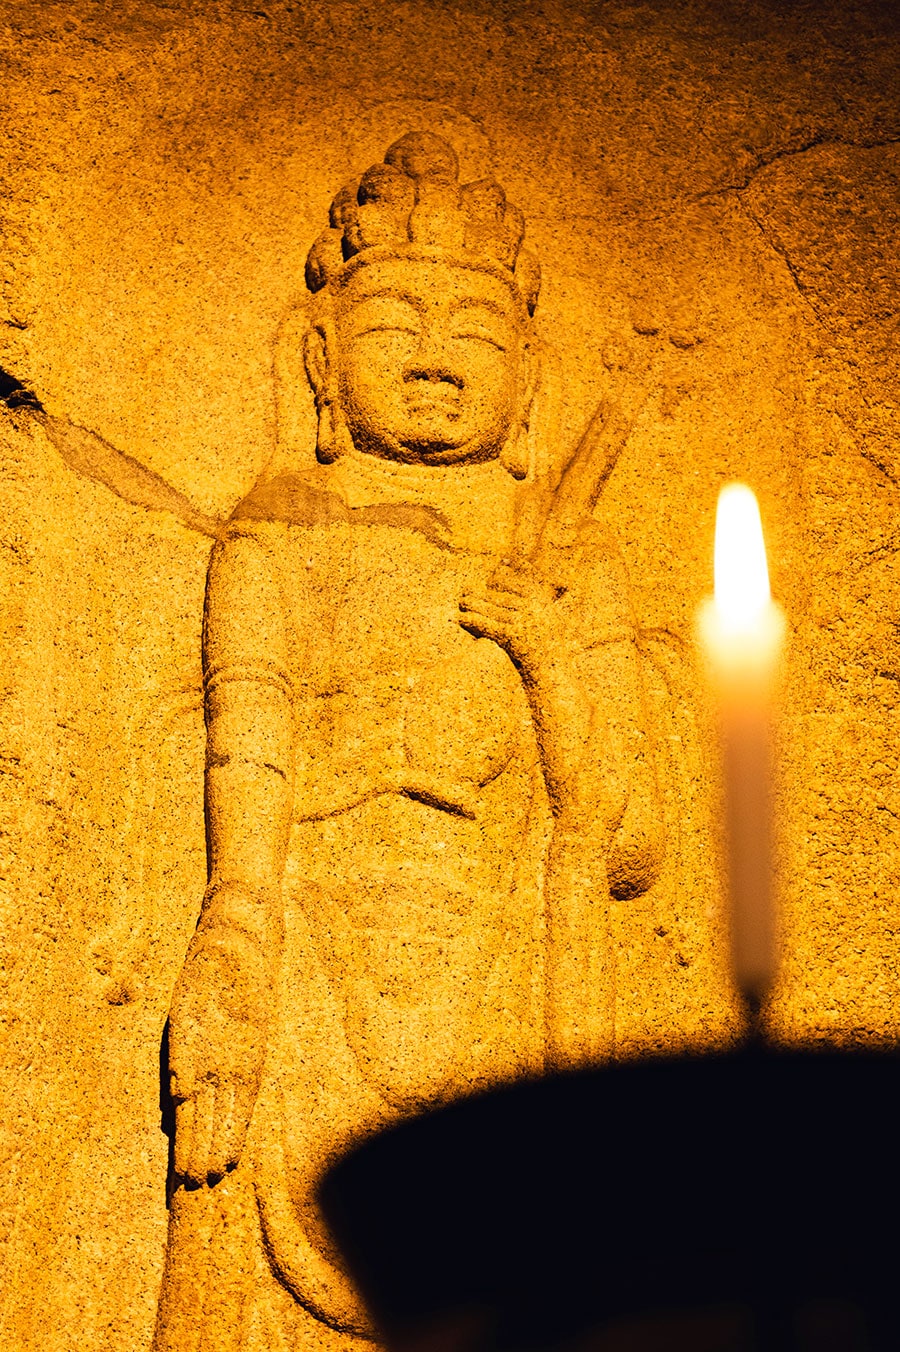 高さ4.5m、幅5.5mの巨大な十一面観音菩薩像は本堂の裏の岩とつながっている。頭に十一の顔がついており穏やかな表情に癒やされる。